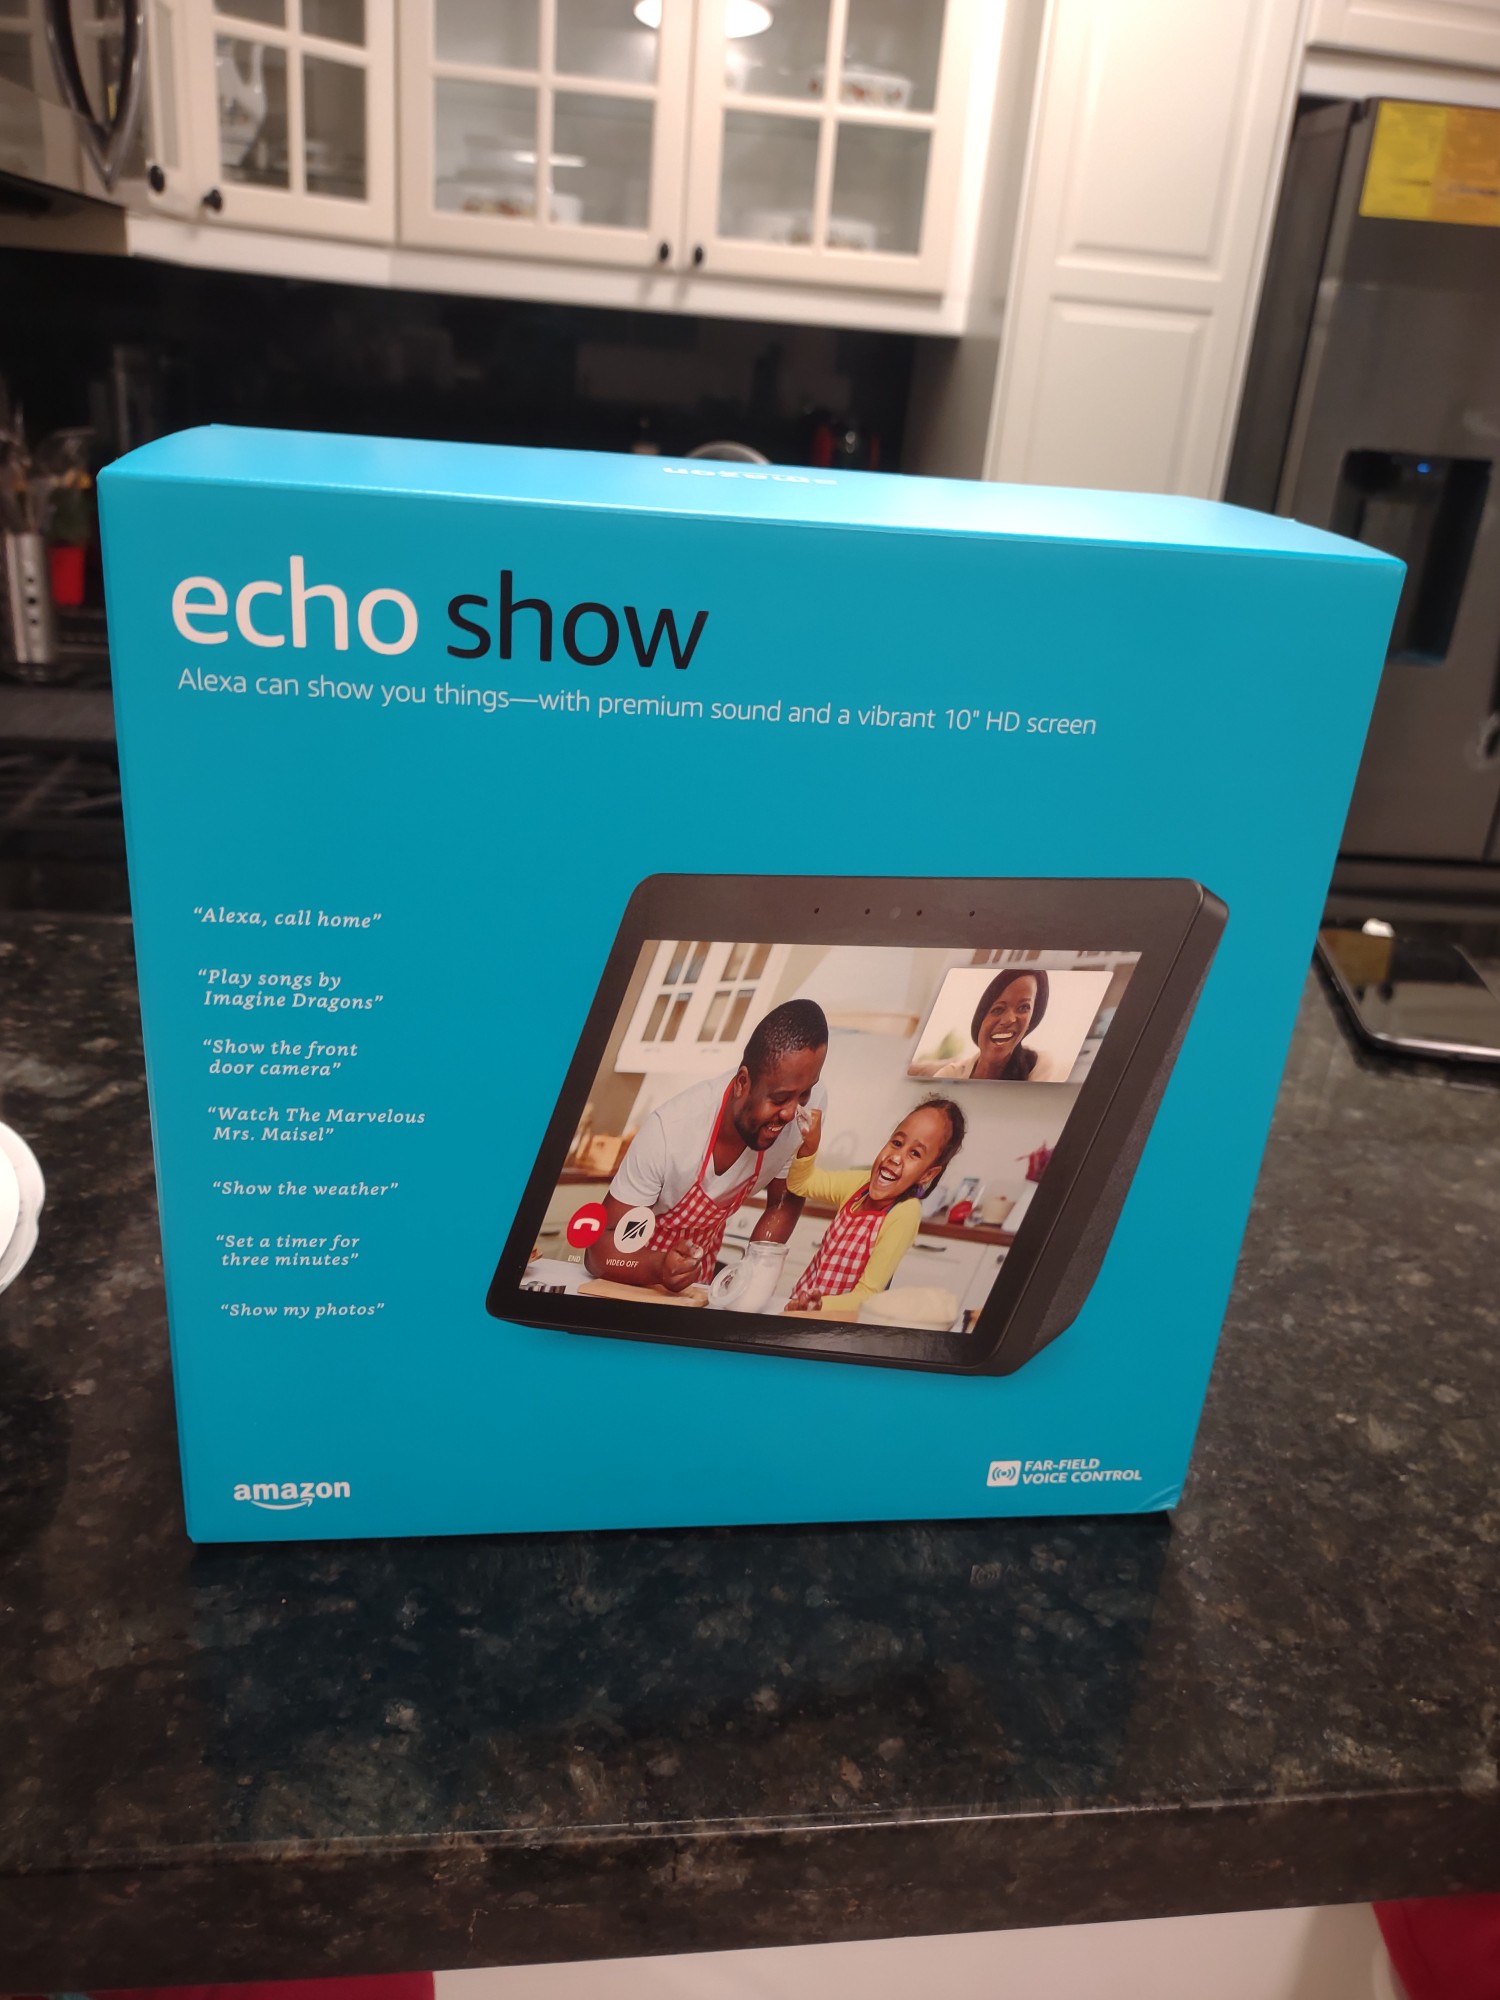 accesorios para electronica - Vendo Amazon Alexa echo show 5 nuevo sellado a un super precio especial